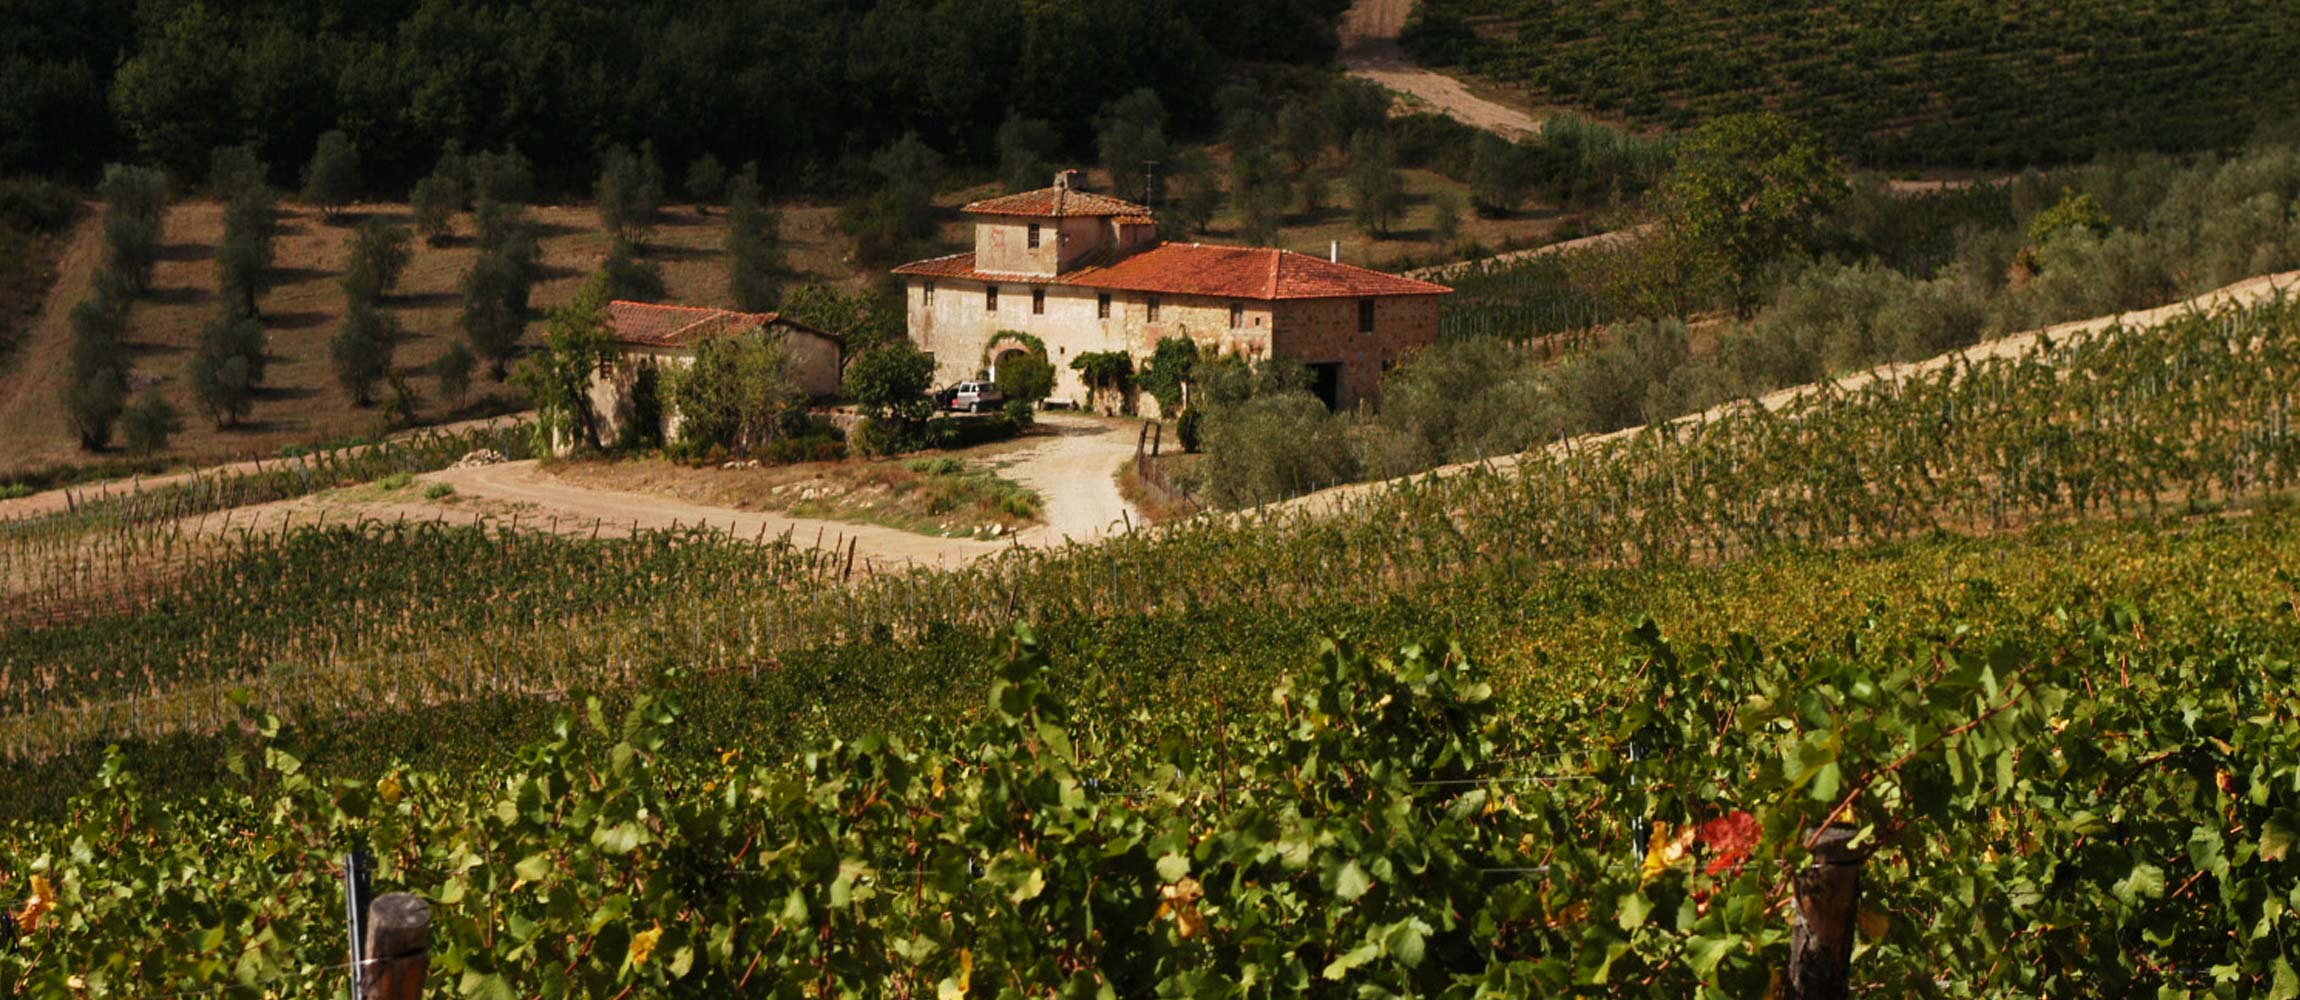 Tuscany Stone Farm Houses